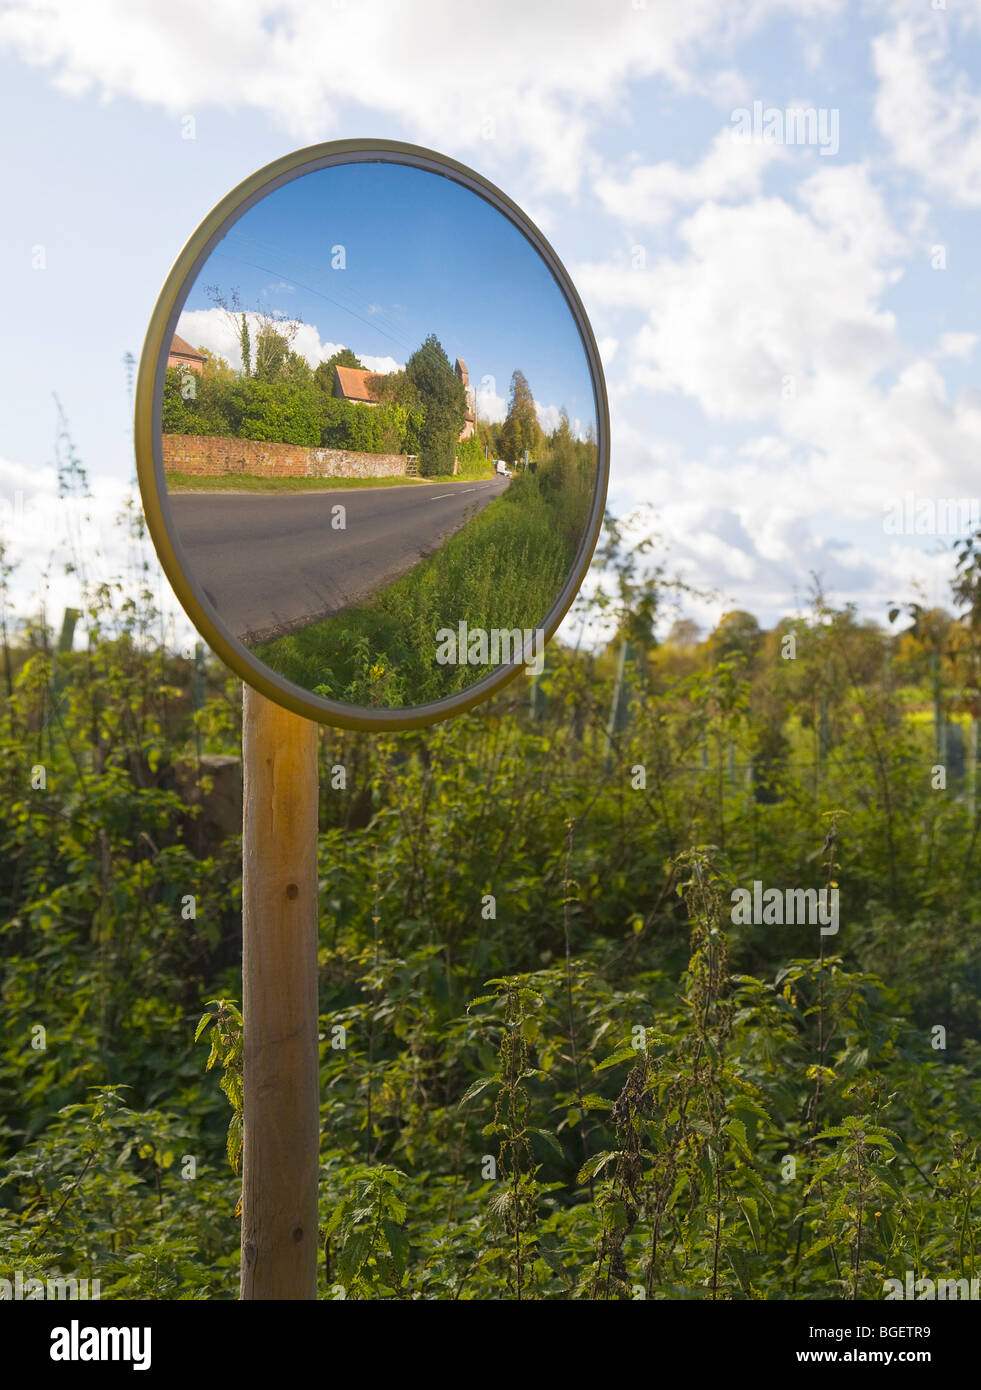 Miroir d'une route, pour montrer toute la circulation venant en sens inverse le virage. Frontières du Hampshire et du Dorset. UK Banque D'Images